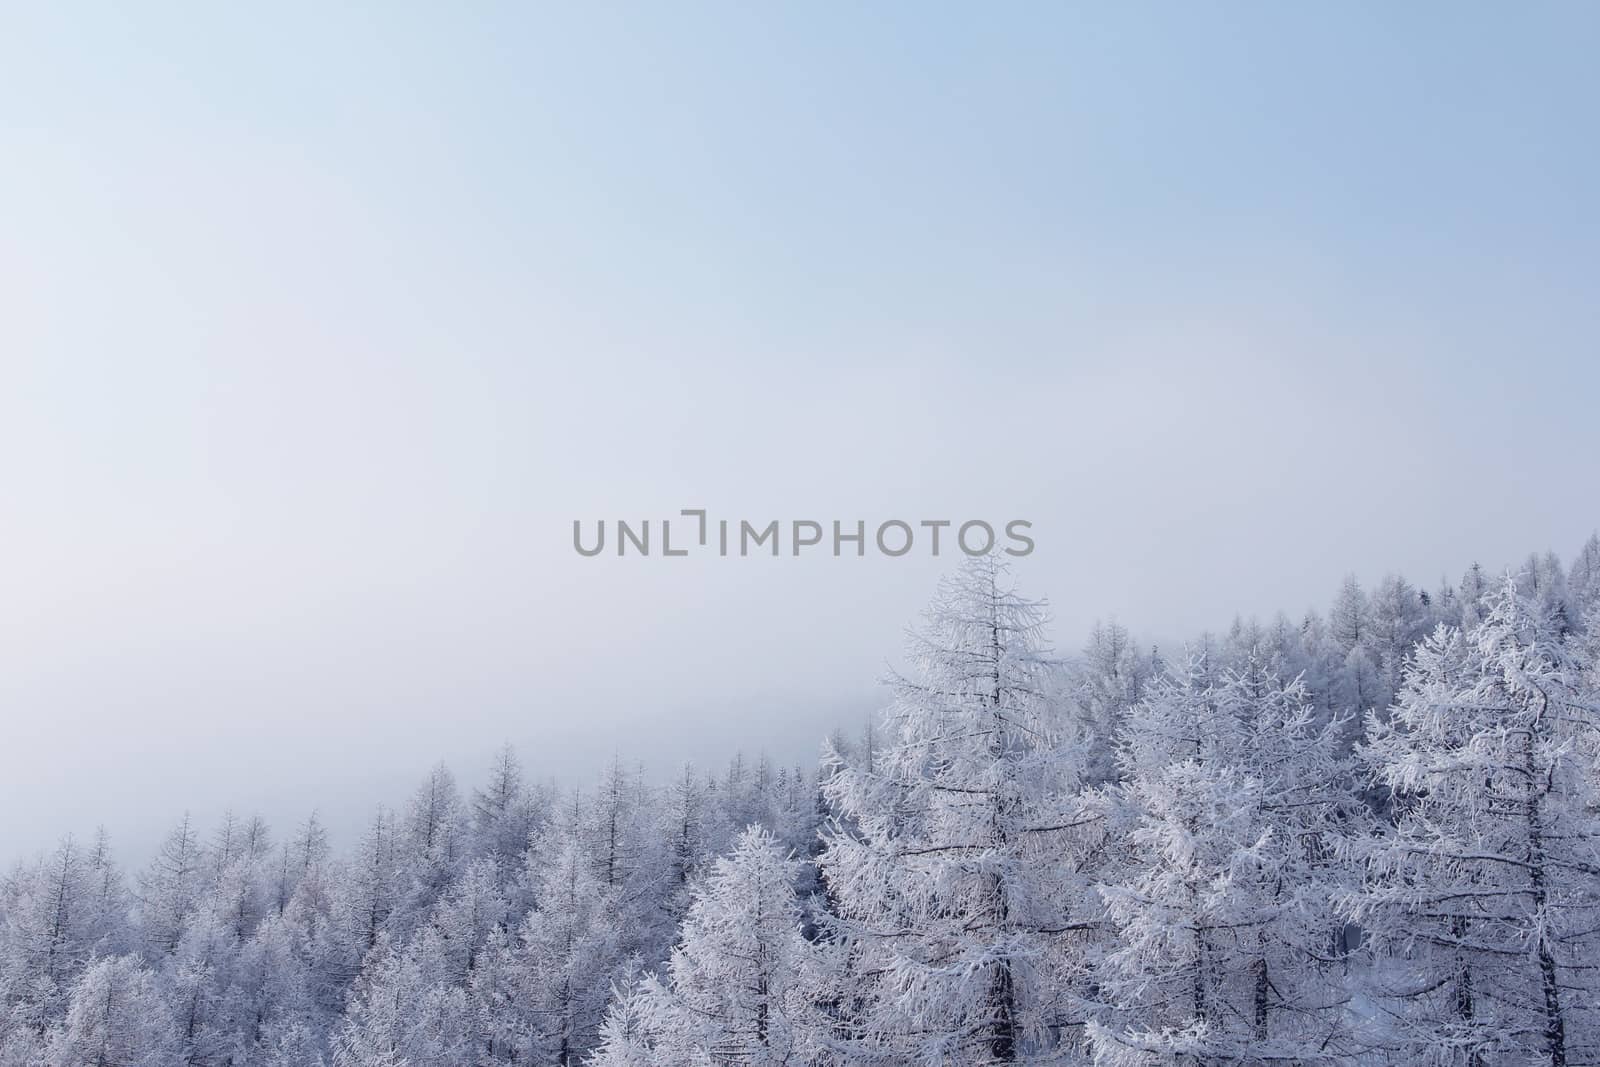 Winter mountain forest in Soelden by destillat